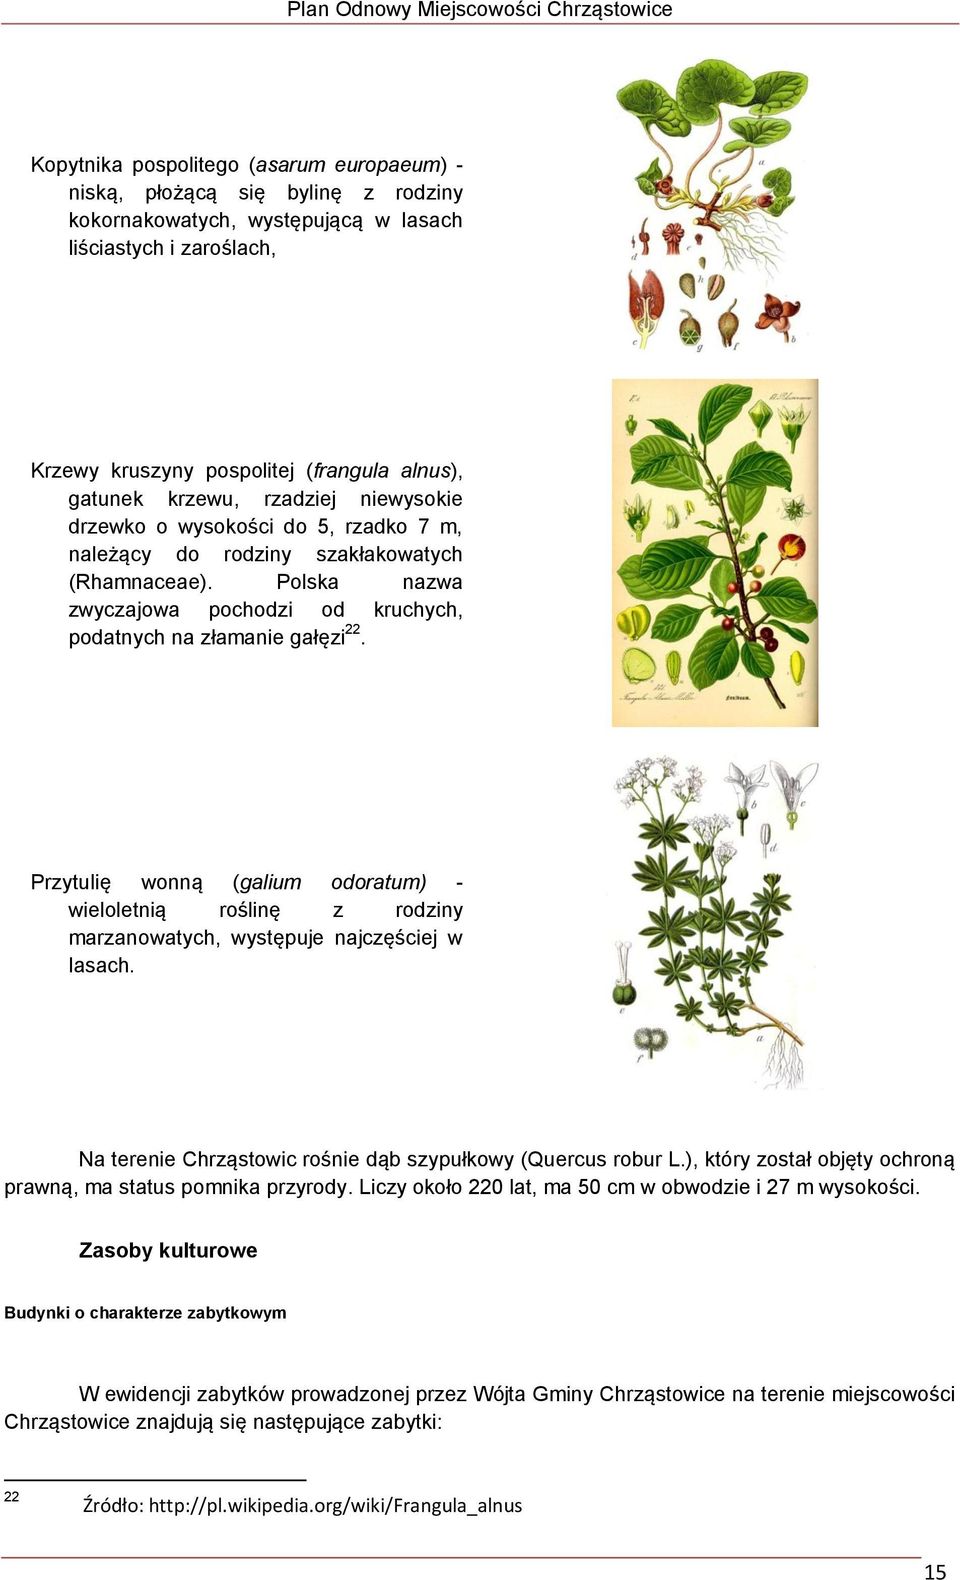 Przytulię wonną (galium odoratum) - wieloletnią roślinę z rodziny marzanowatych, występuje najczęściej w lasach. Na terenie Chrząstowic rośnie dąb szypułkowy (Quercus robur L.